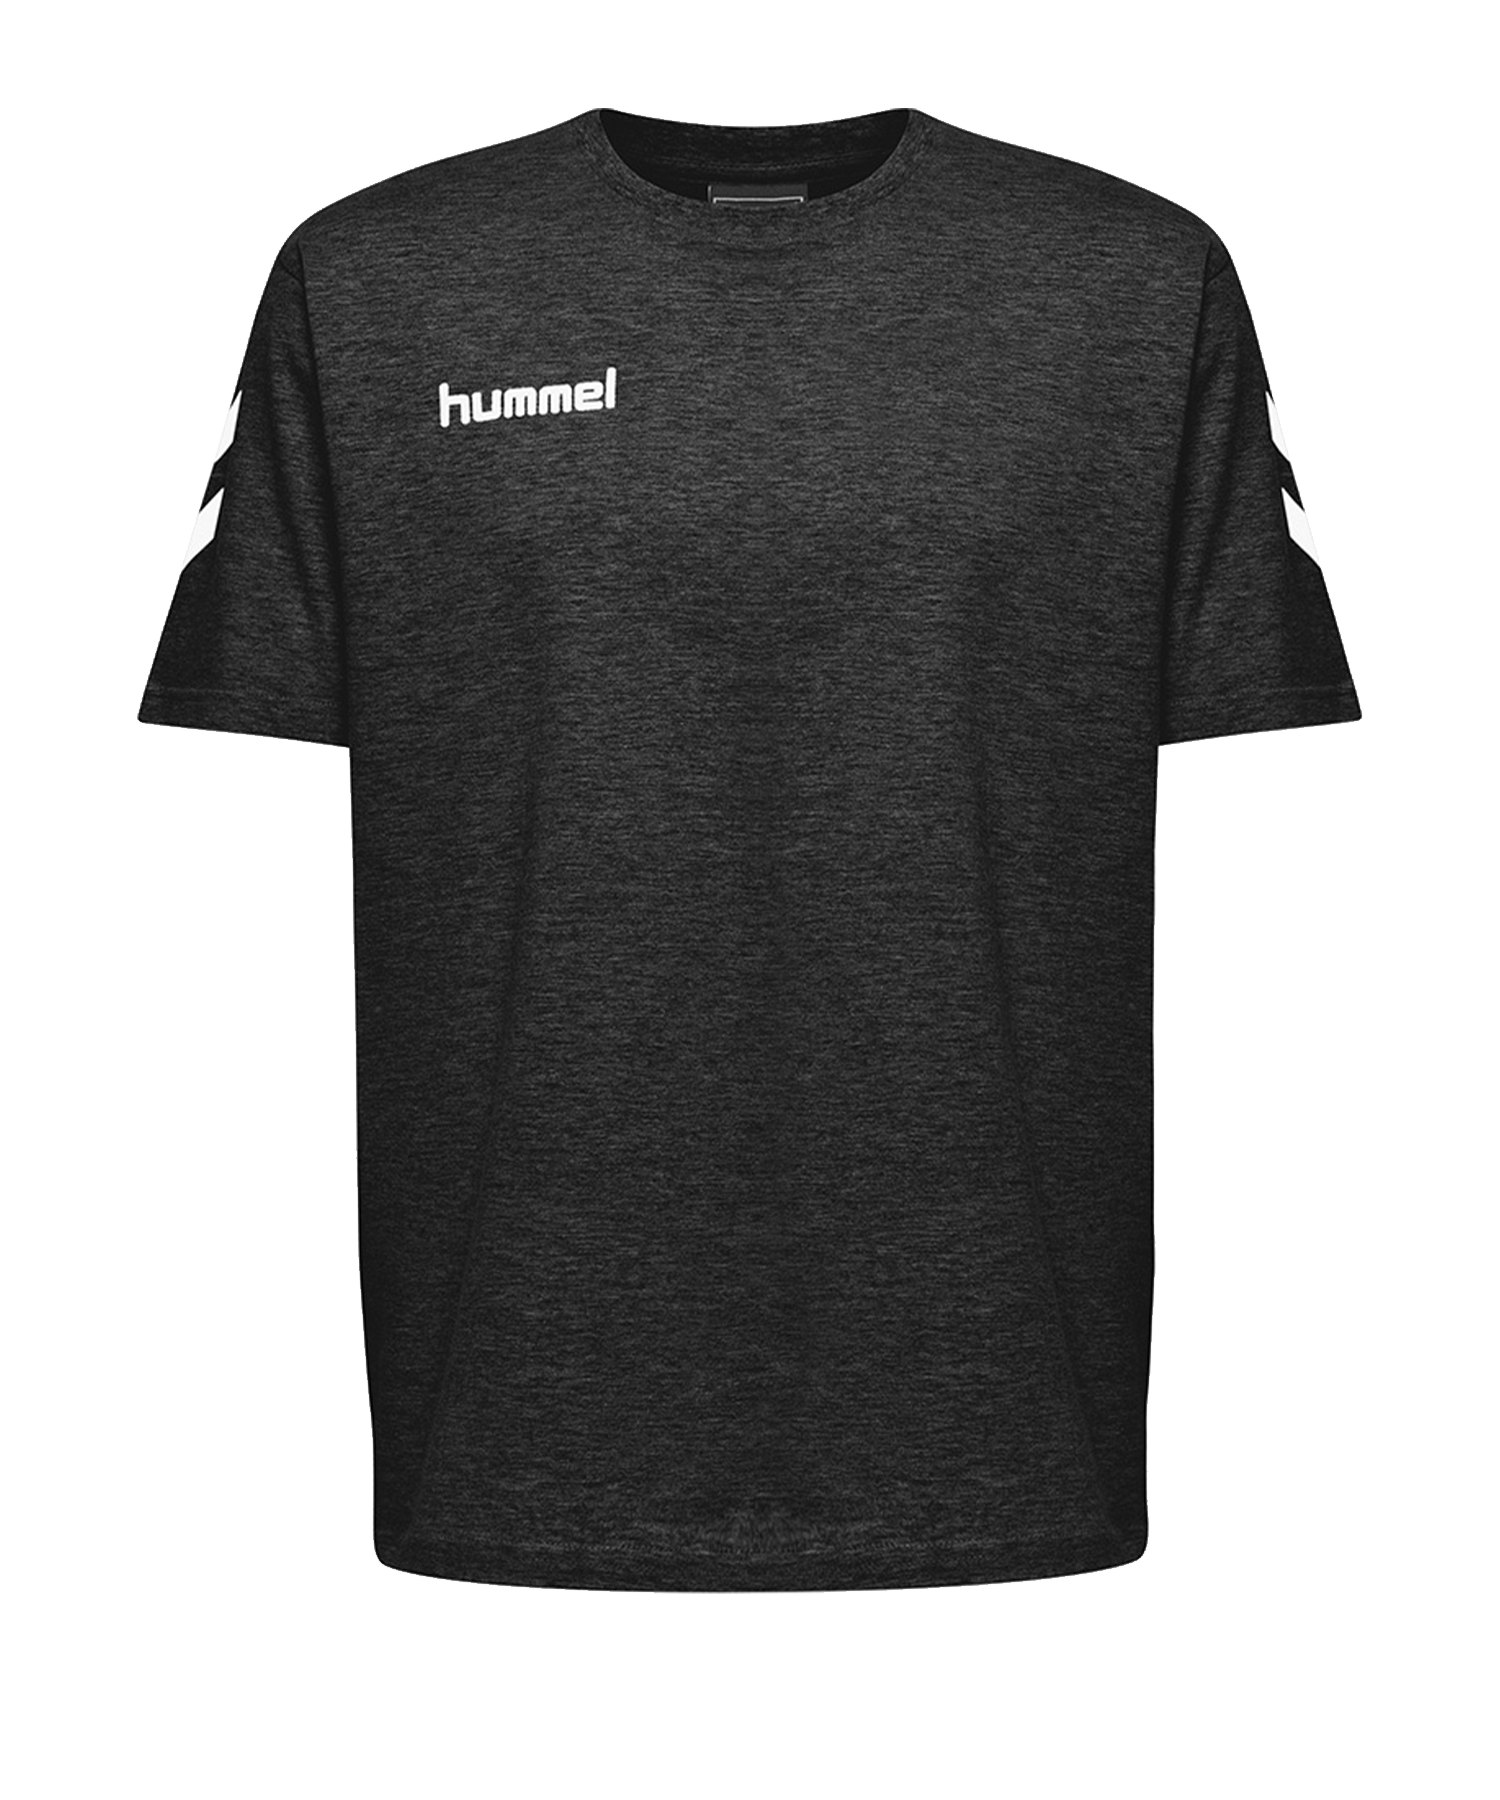 Hummel Cotton T-Shirt Schwarz F2001 - Schwarz